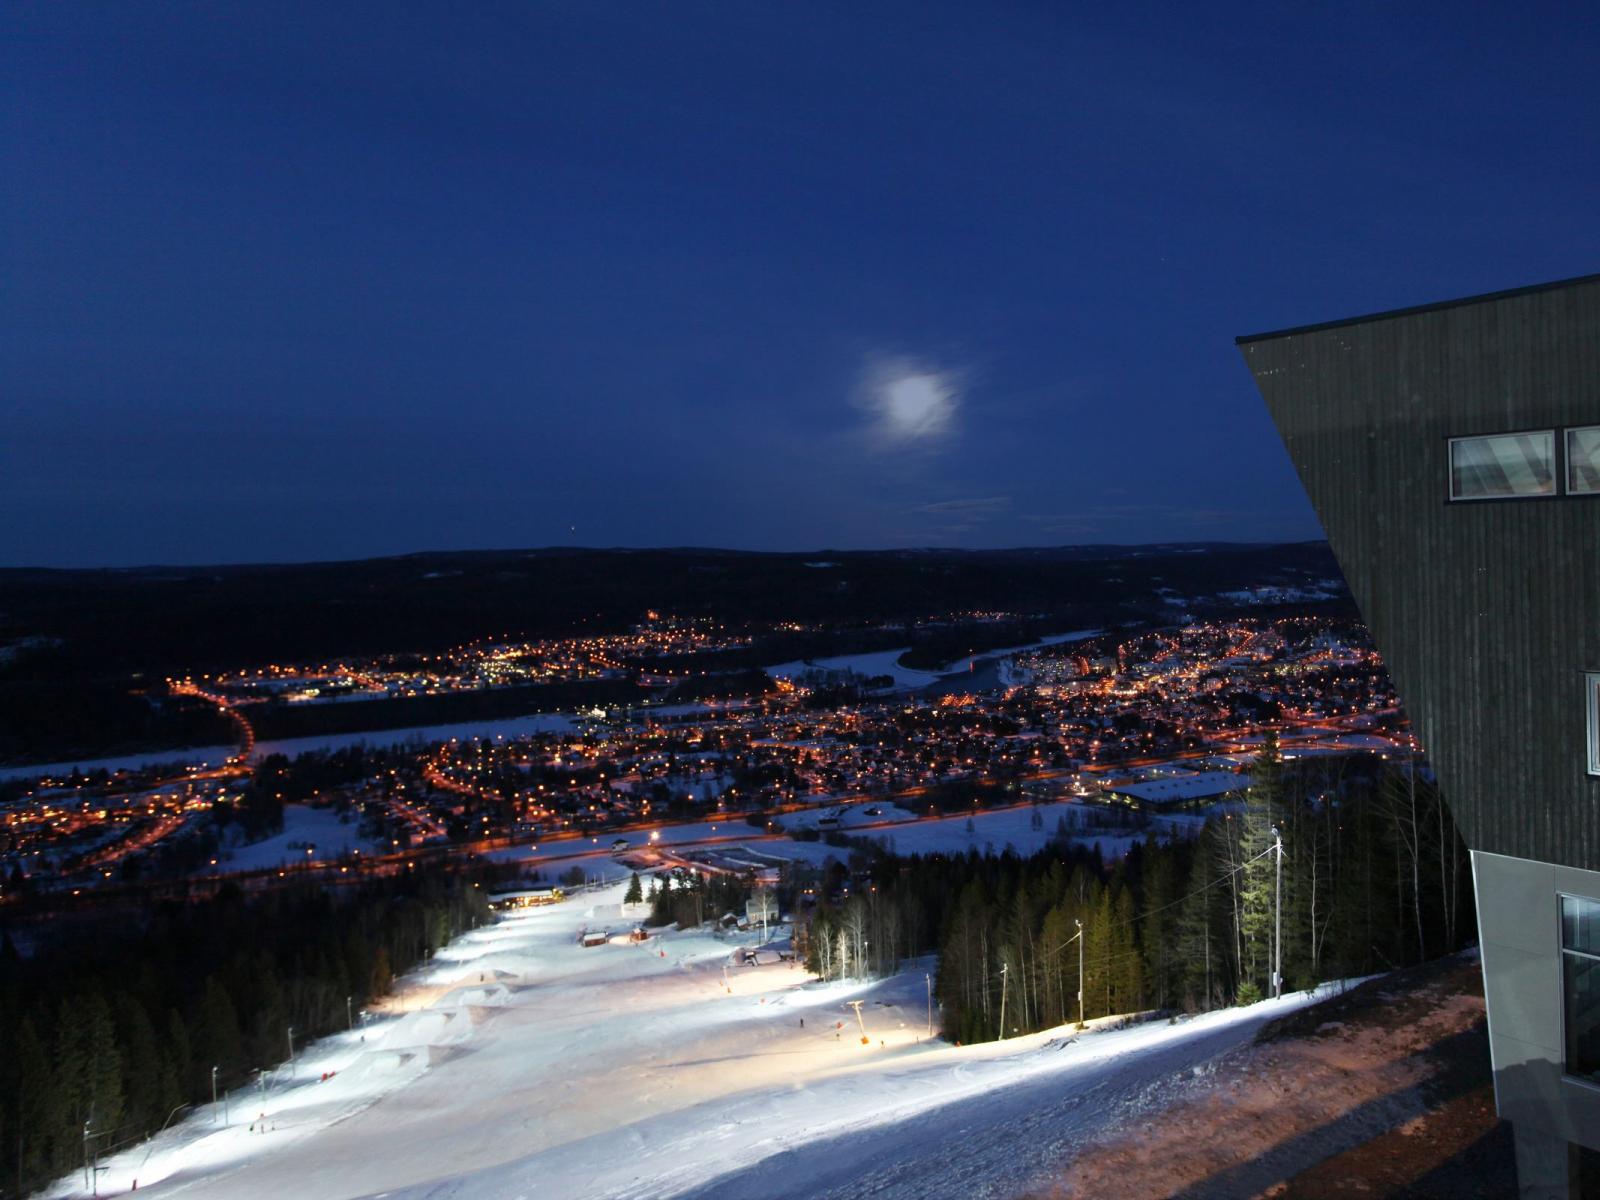 Hallsta Ski - aktiviteter året runt på Hallstaberget